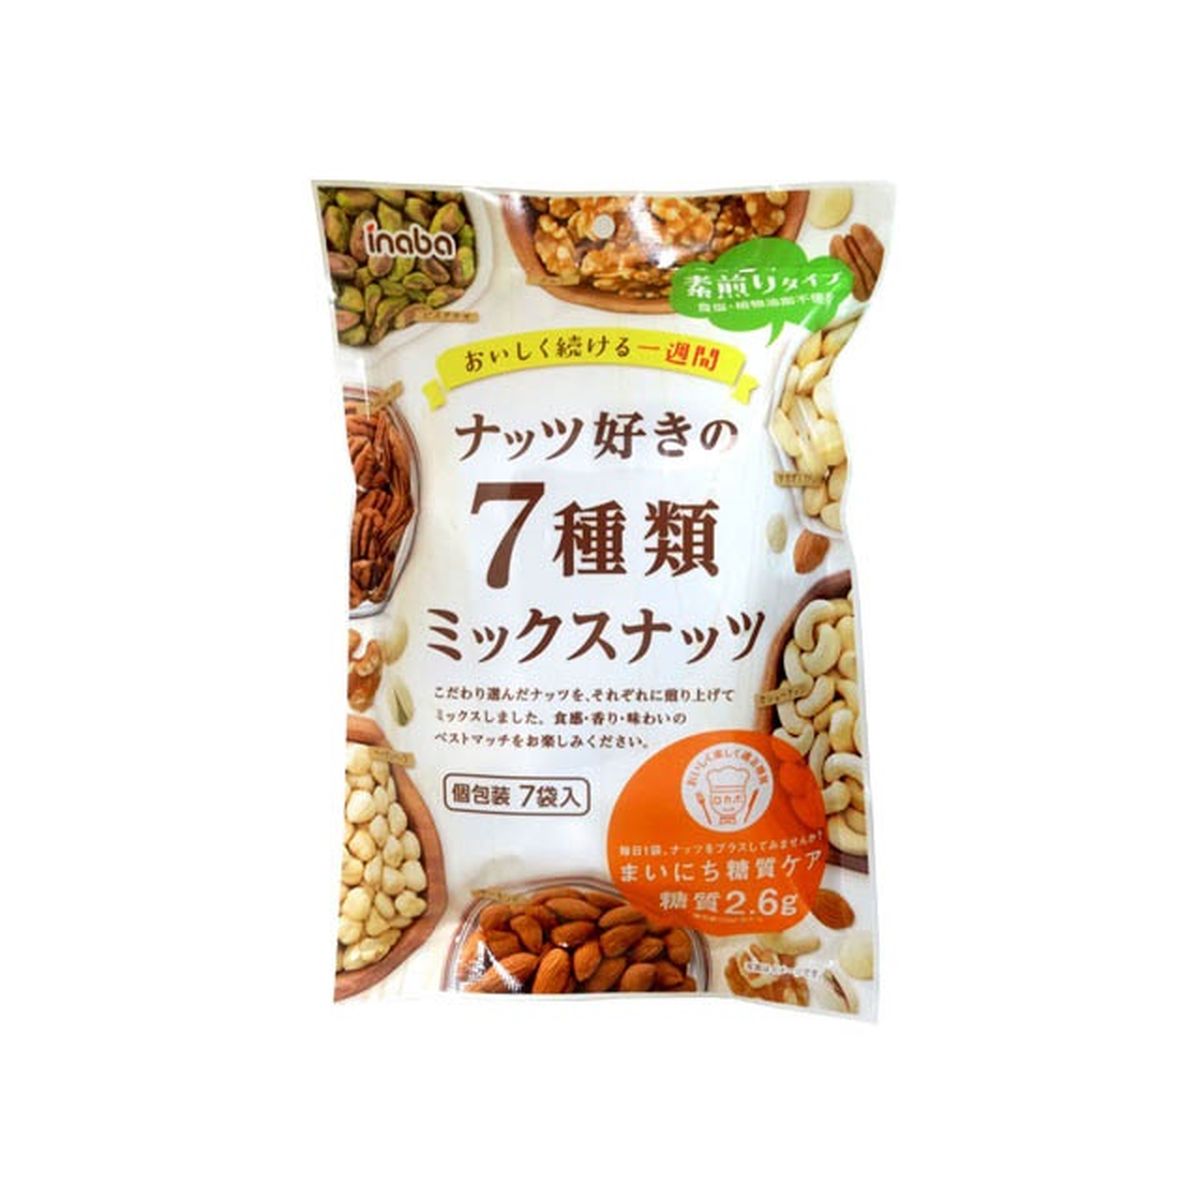 【12個入り】稲葉ピーナツ ナッツ好きの7種類ミックスナッツ 154g